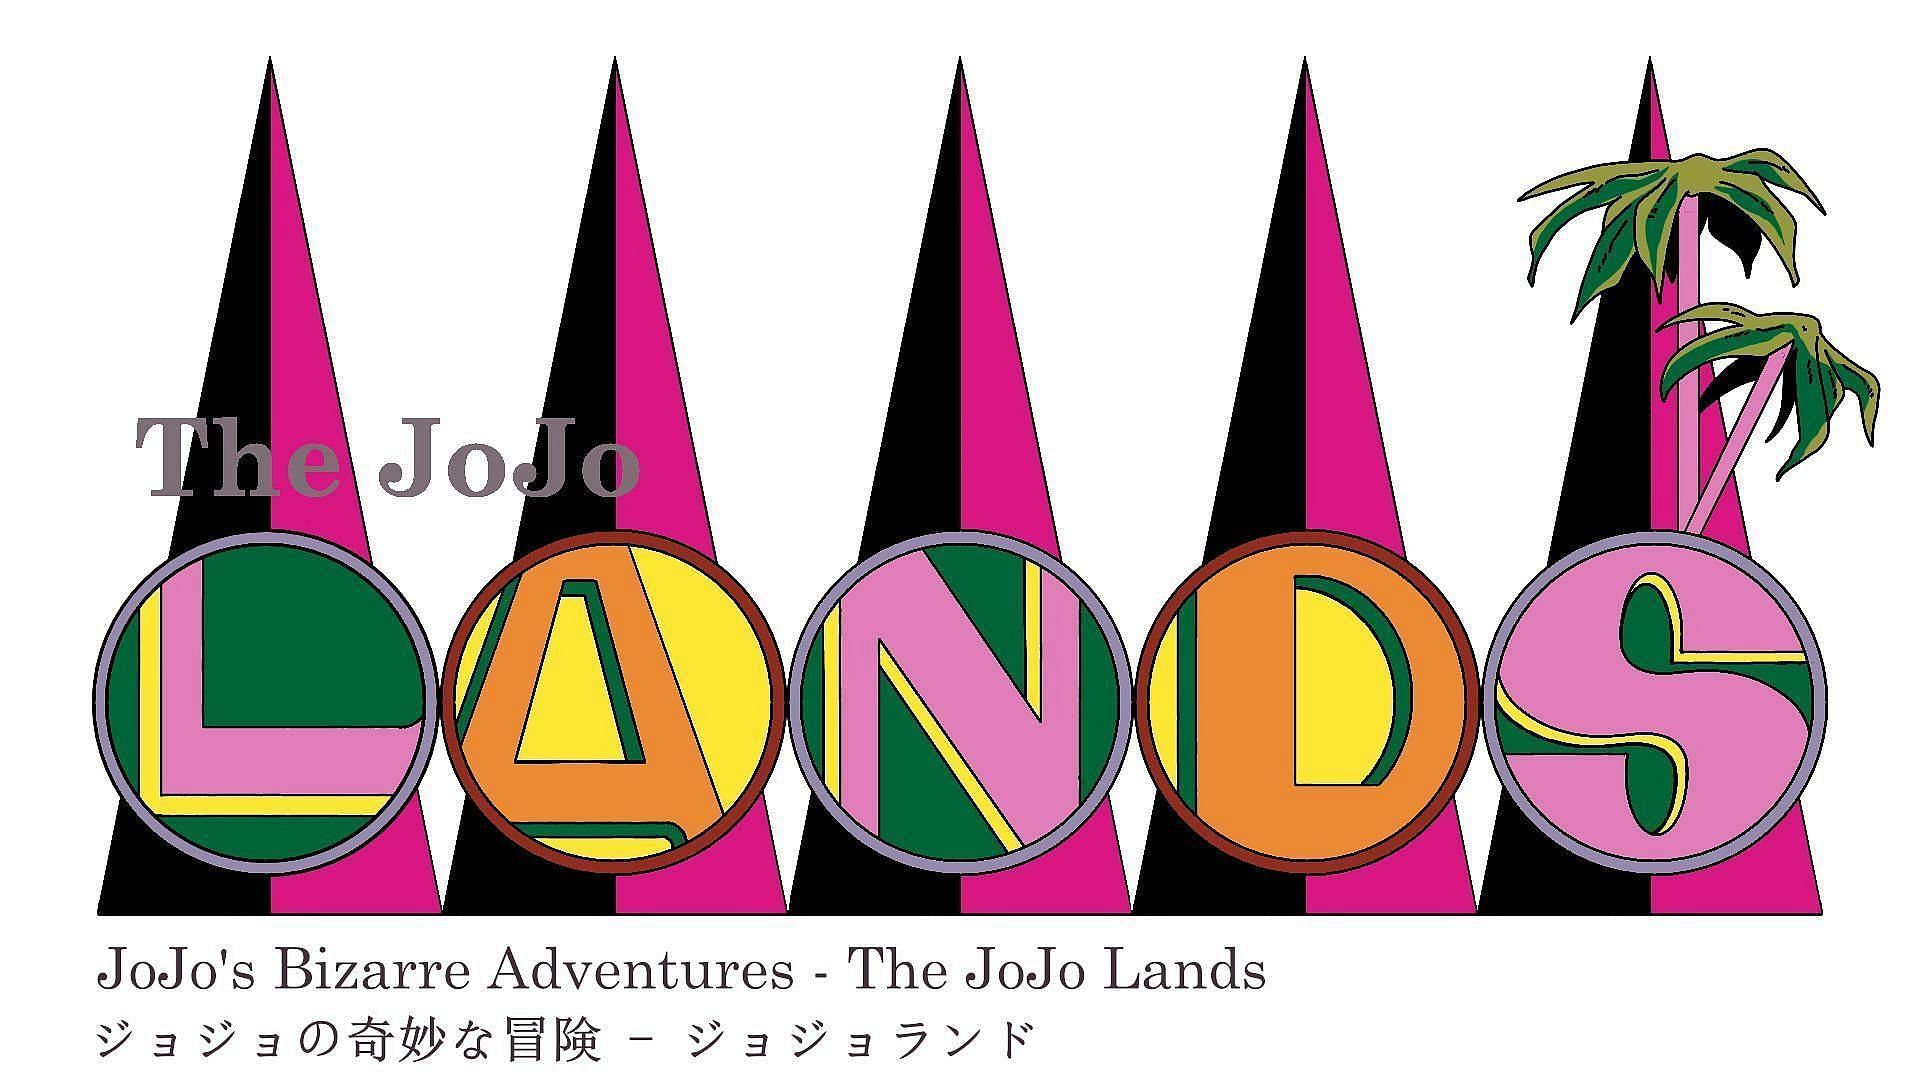 JoJoLands chapter 14 release date (Image via Twitter user @velupium, AKA velupio)